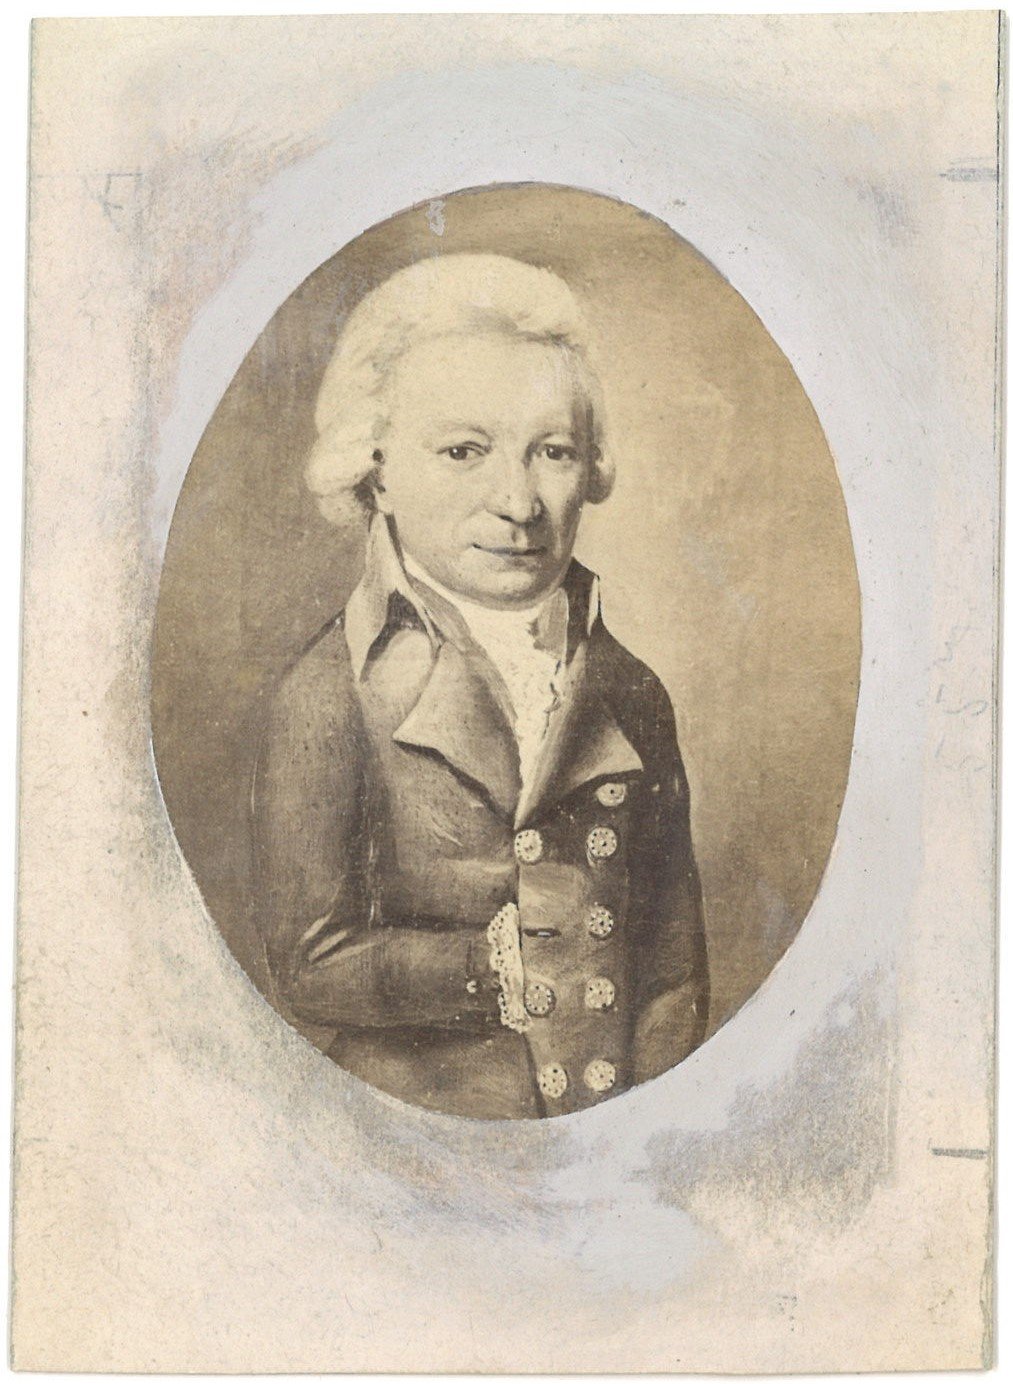 Seckt, Johann Samuel (1744-1819), Ratsherr und Stadthistoriker in Prenzlau (Landesgeschichtliche Vereinigung für die Mark Brandenburg e.V., Archiv CC BY)